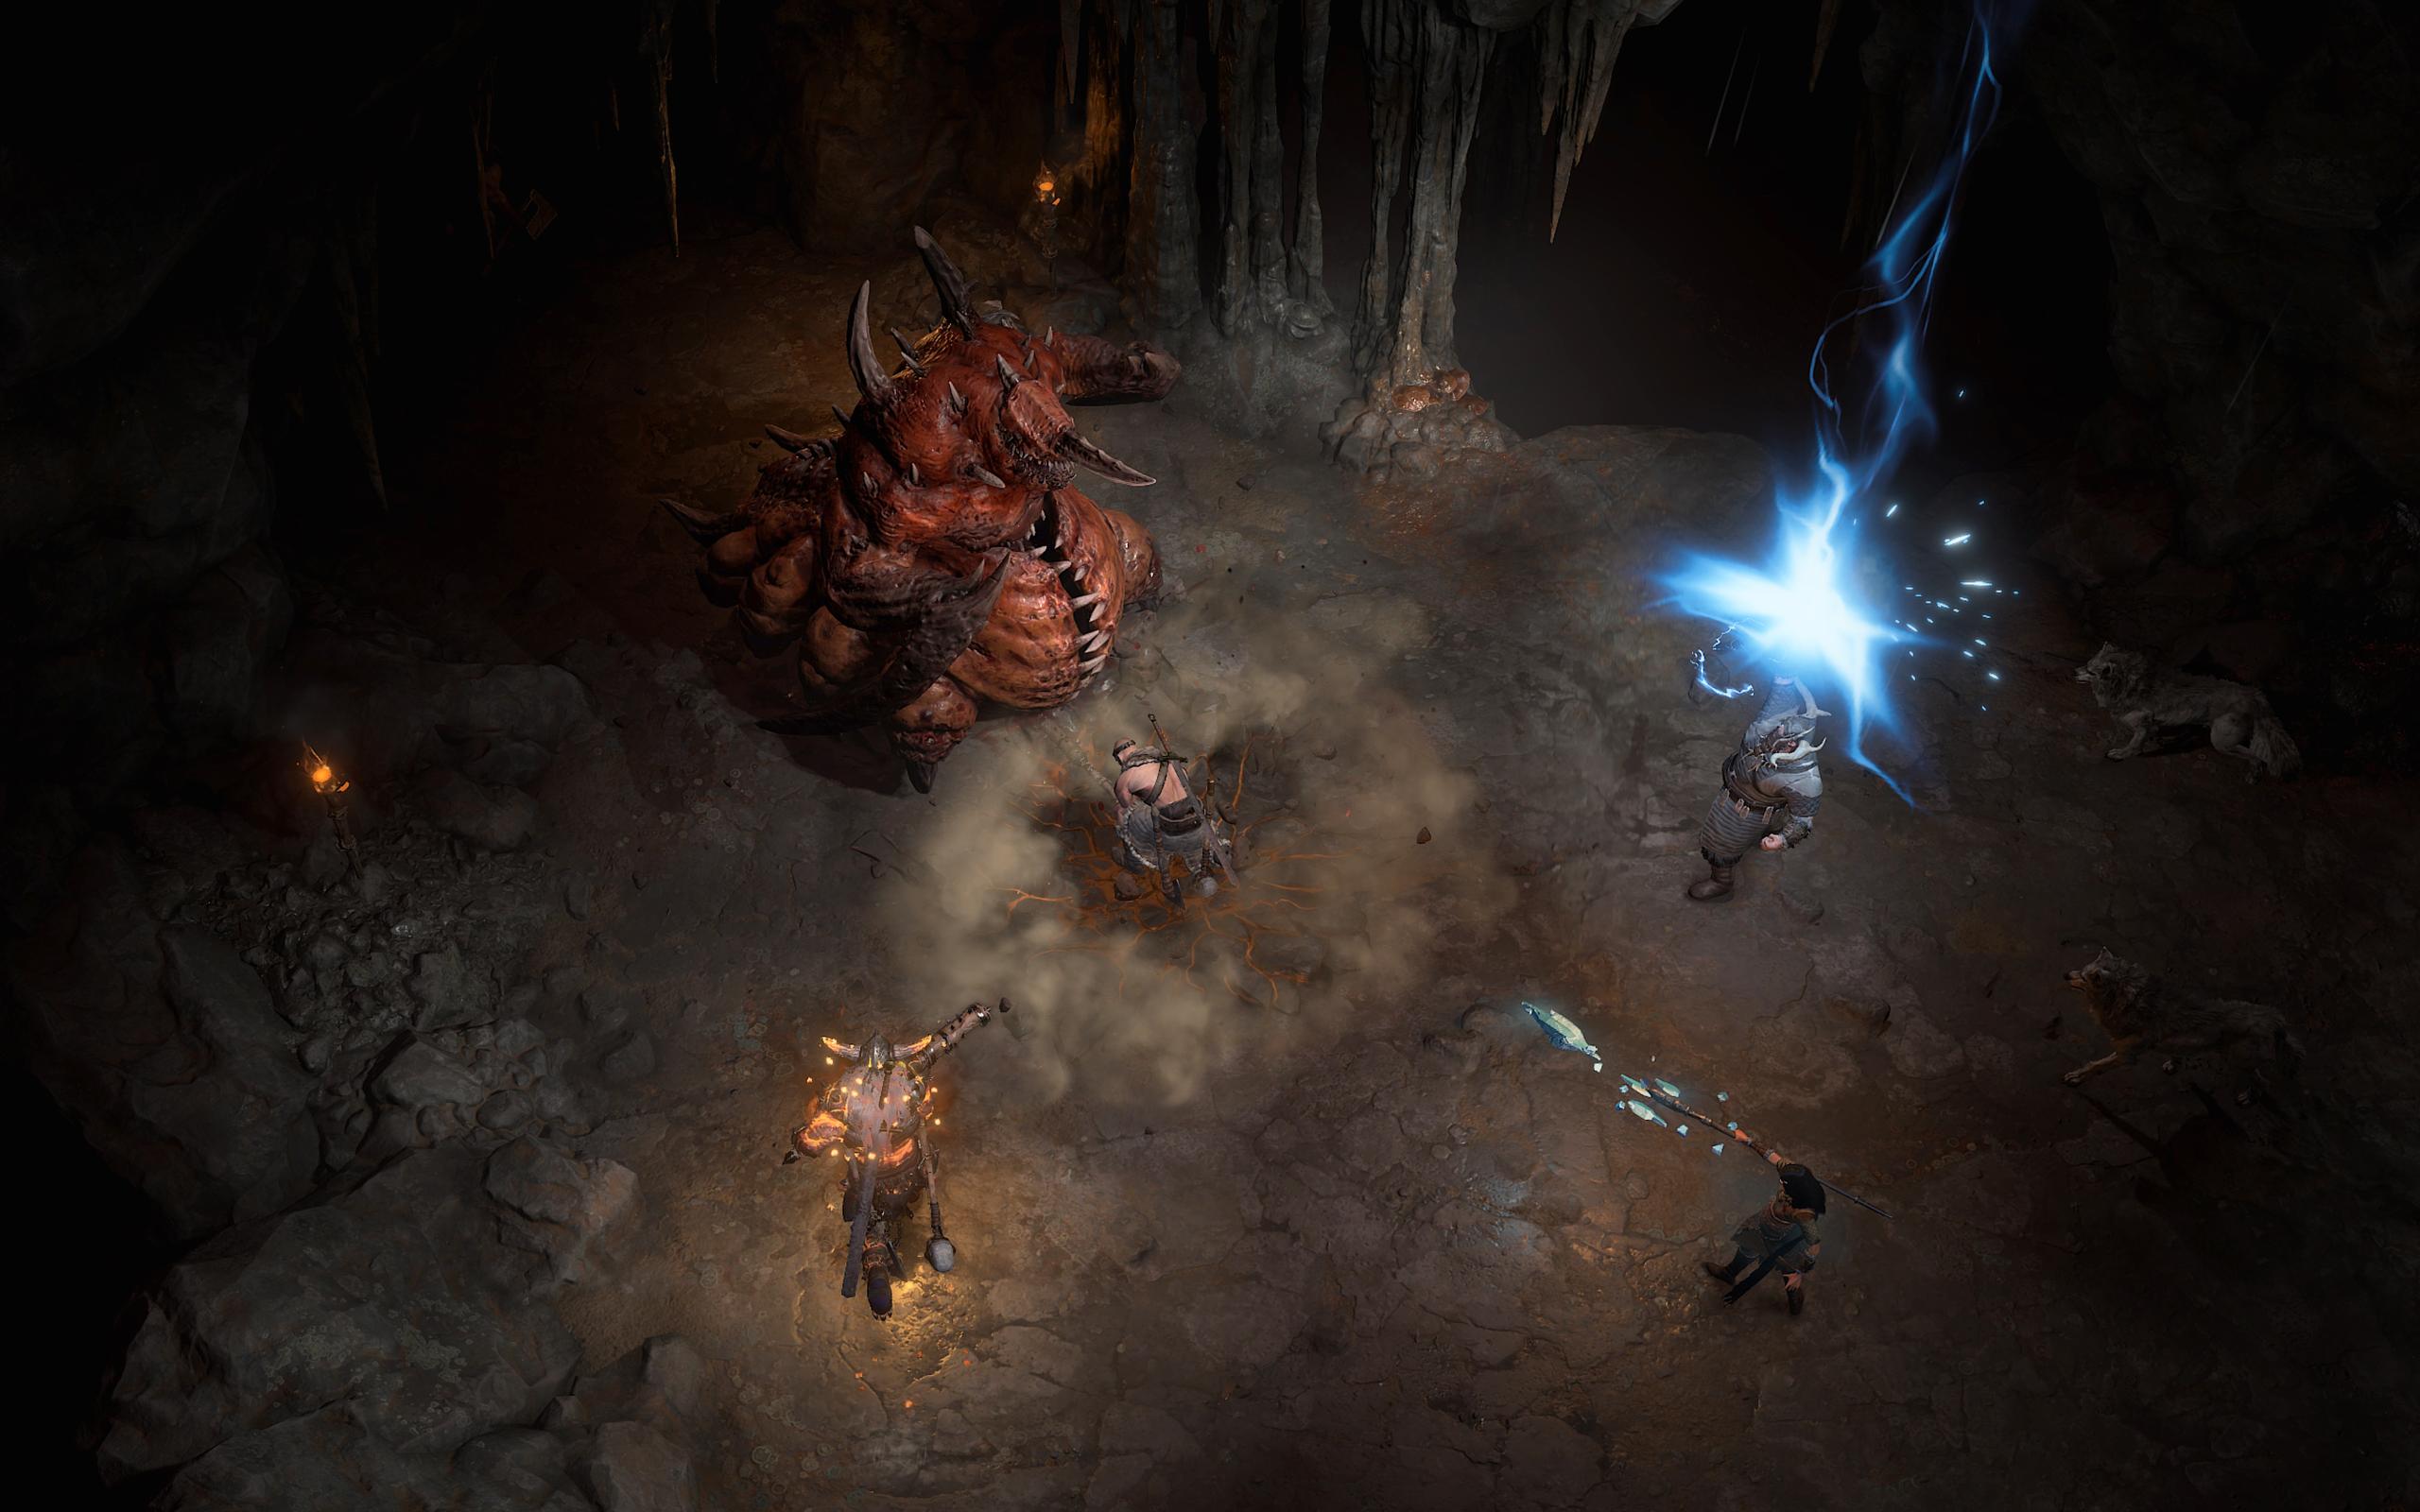 I Diablo 4 får vi en mørkere verden å utforske. 